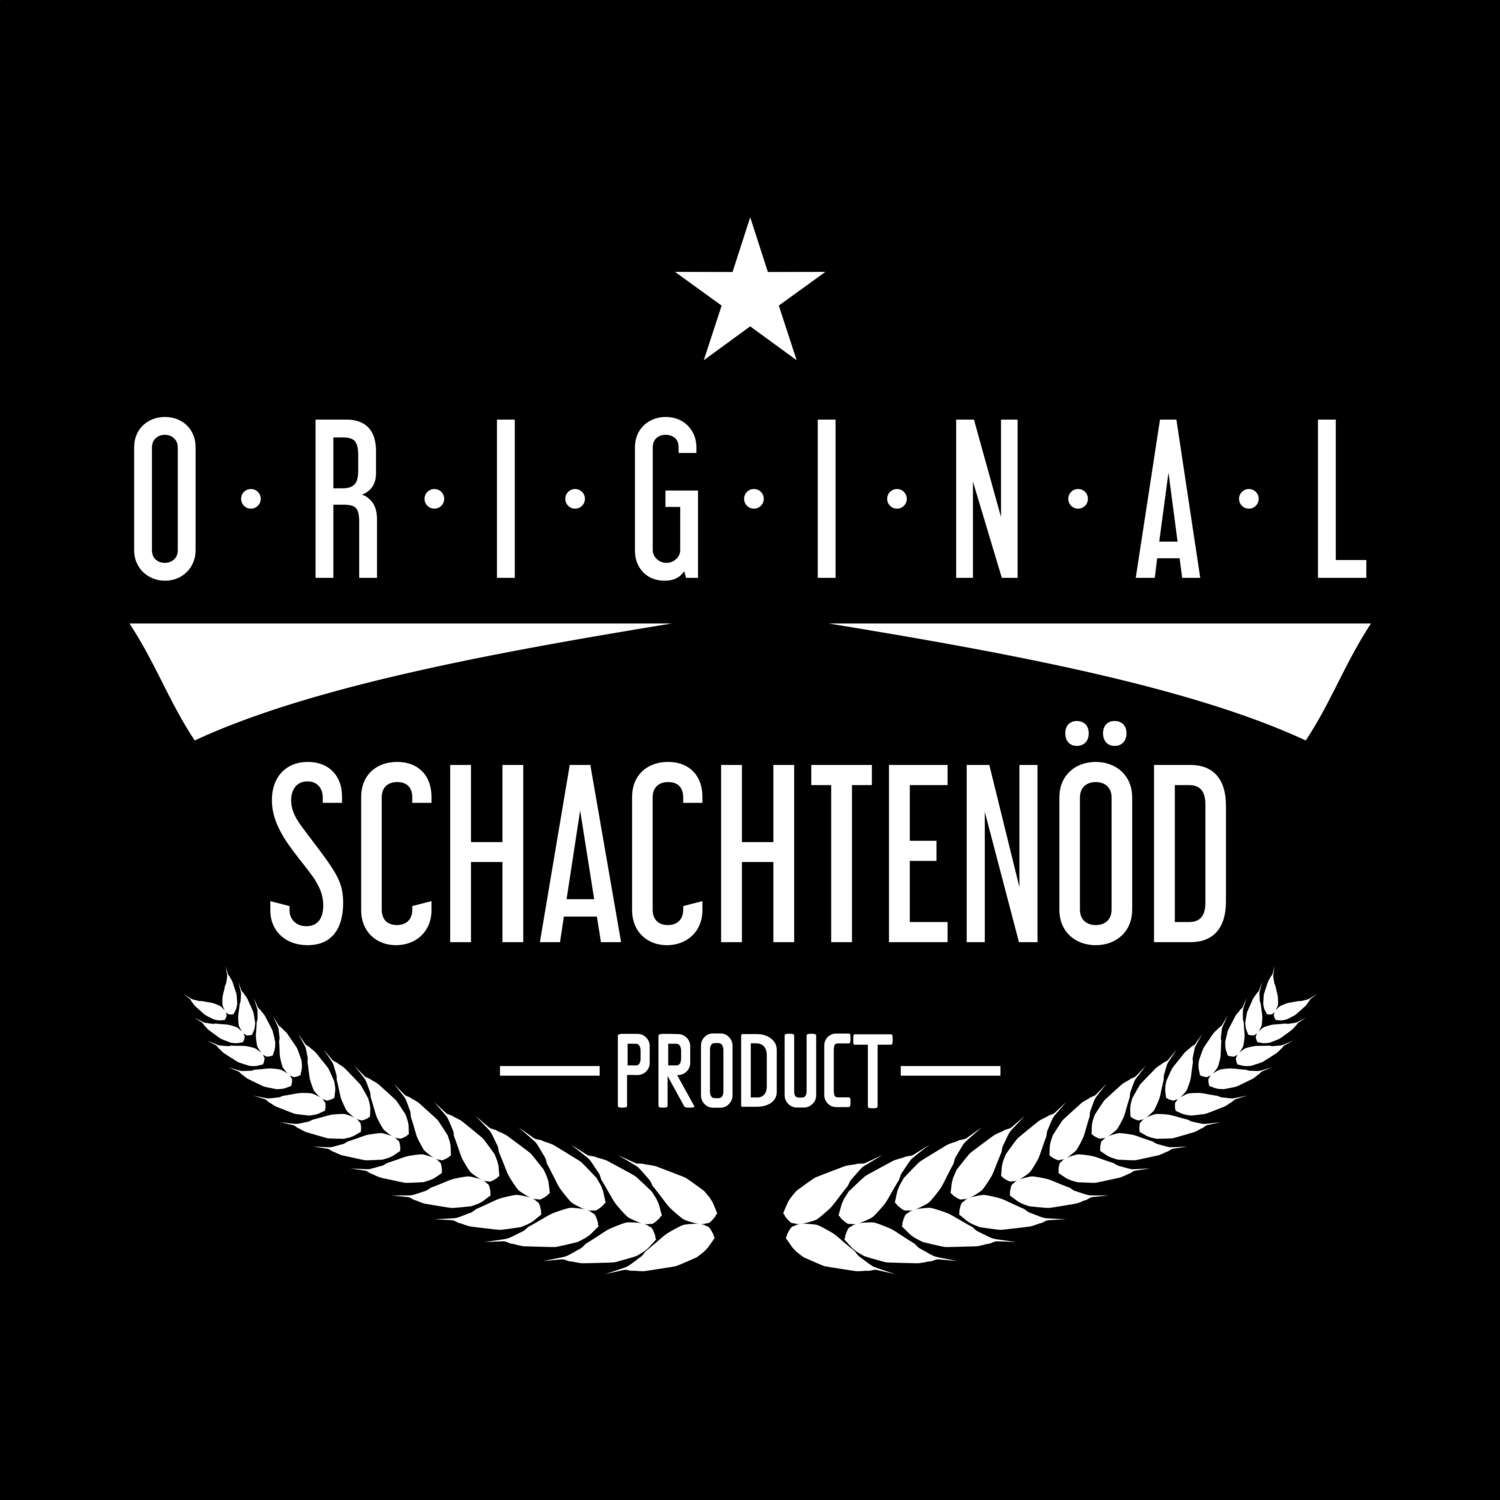 Schachtenöd T-Shirt »Original Product«